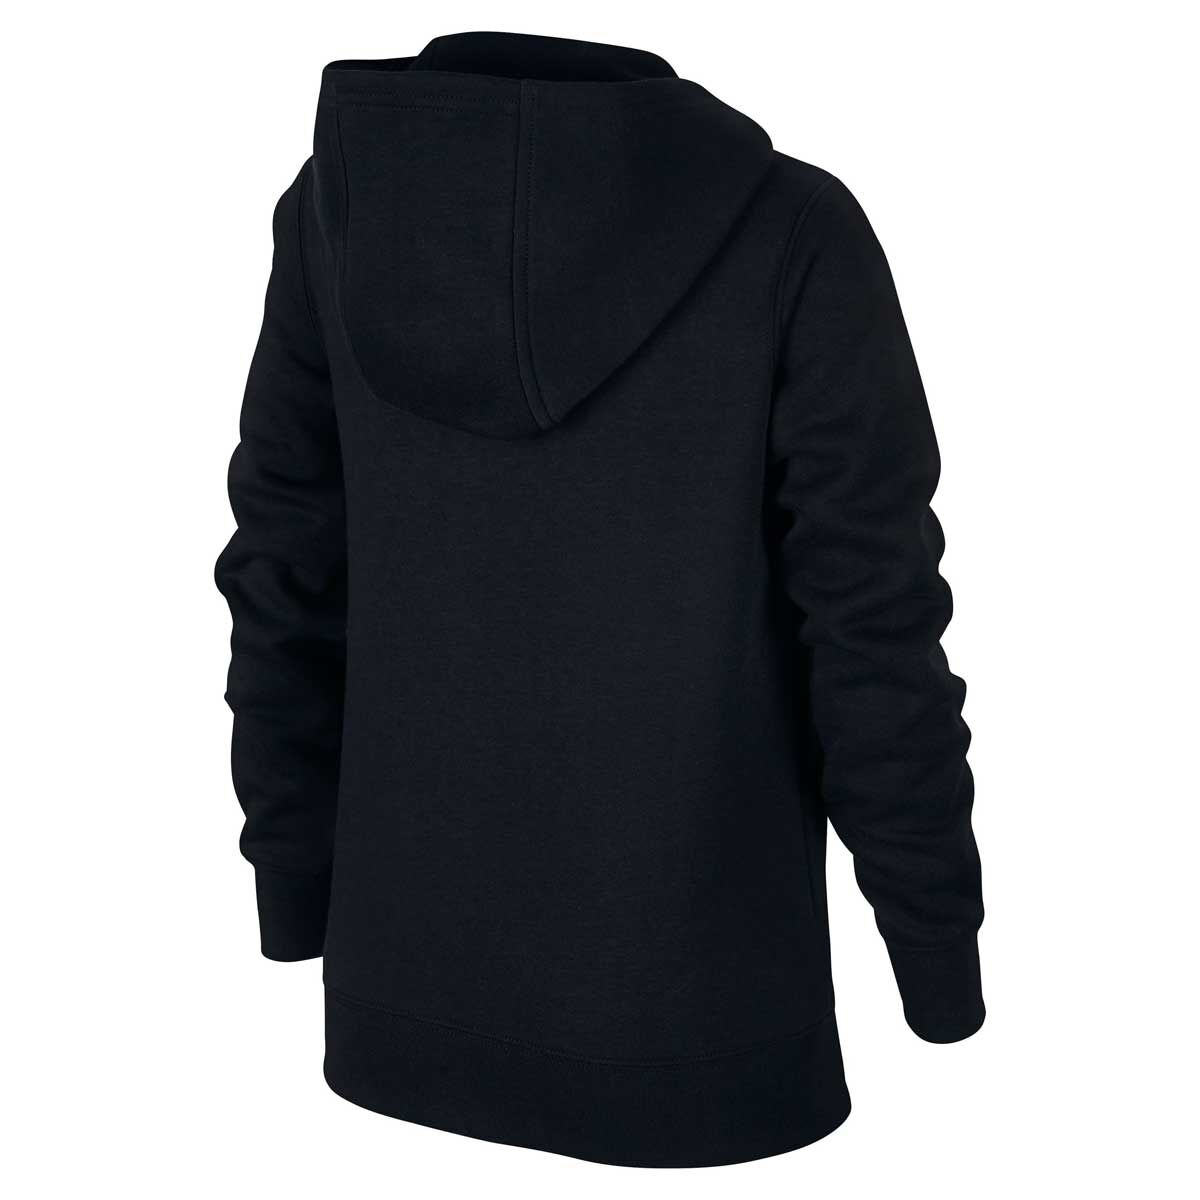 nike fleece hoodie black